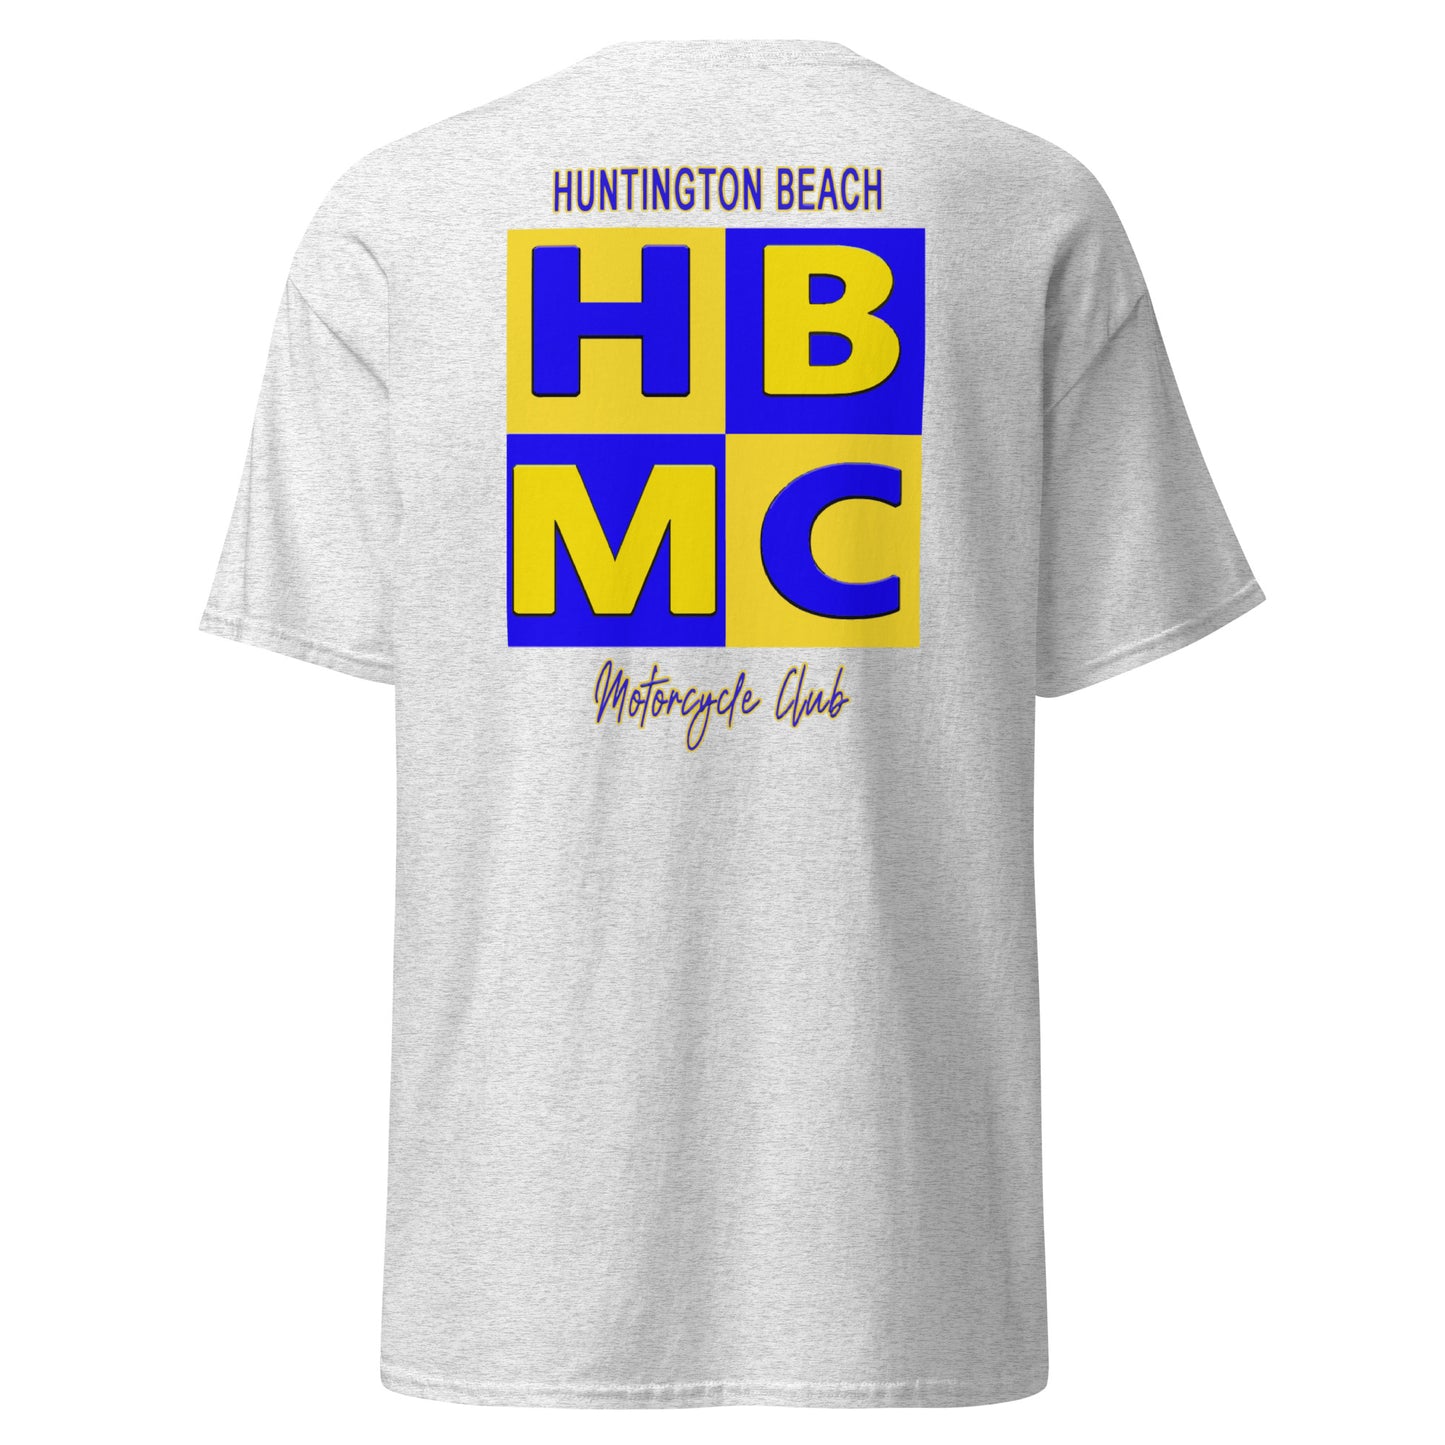 HBMC Members - Men's classic tee